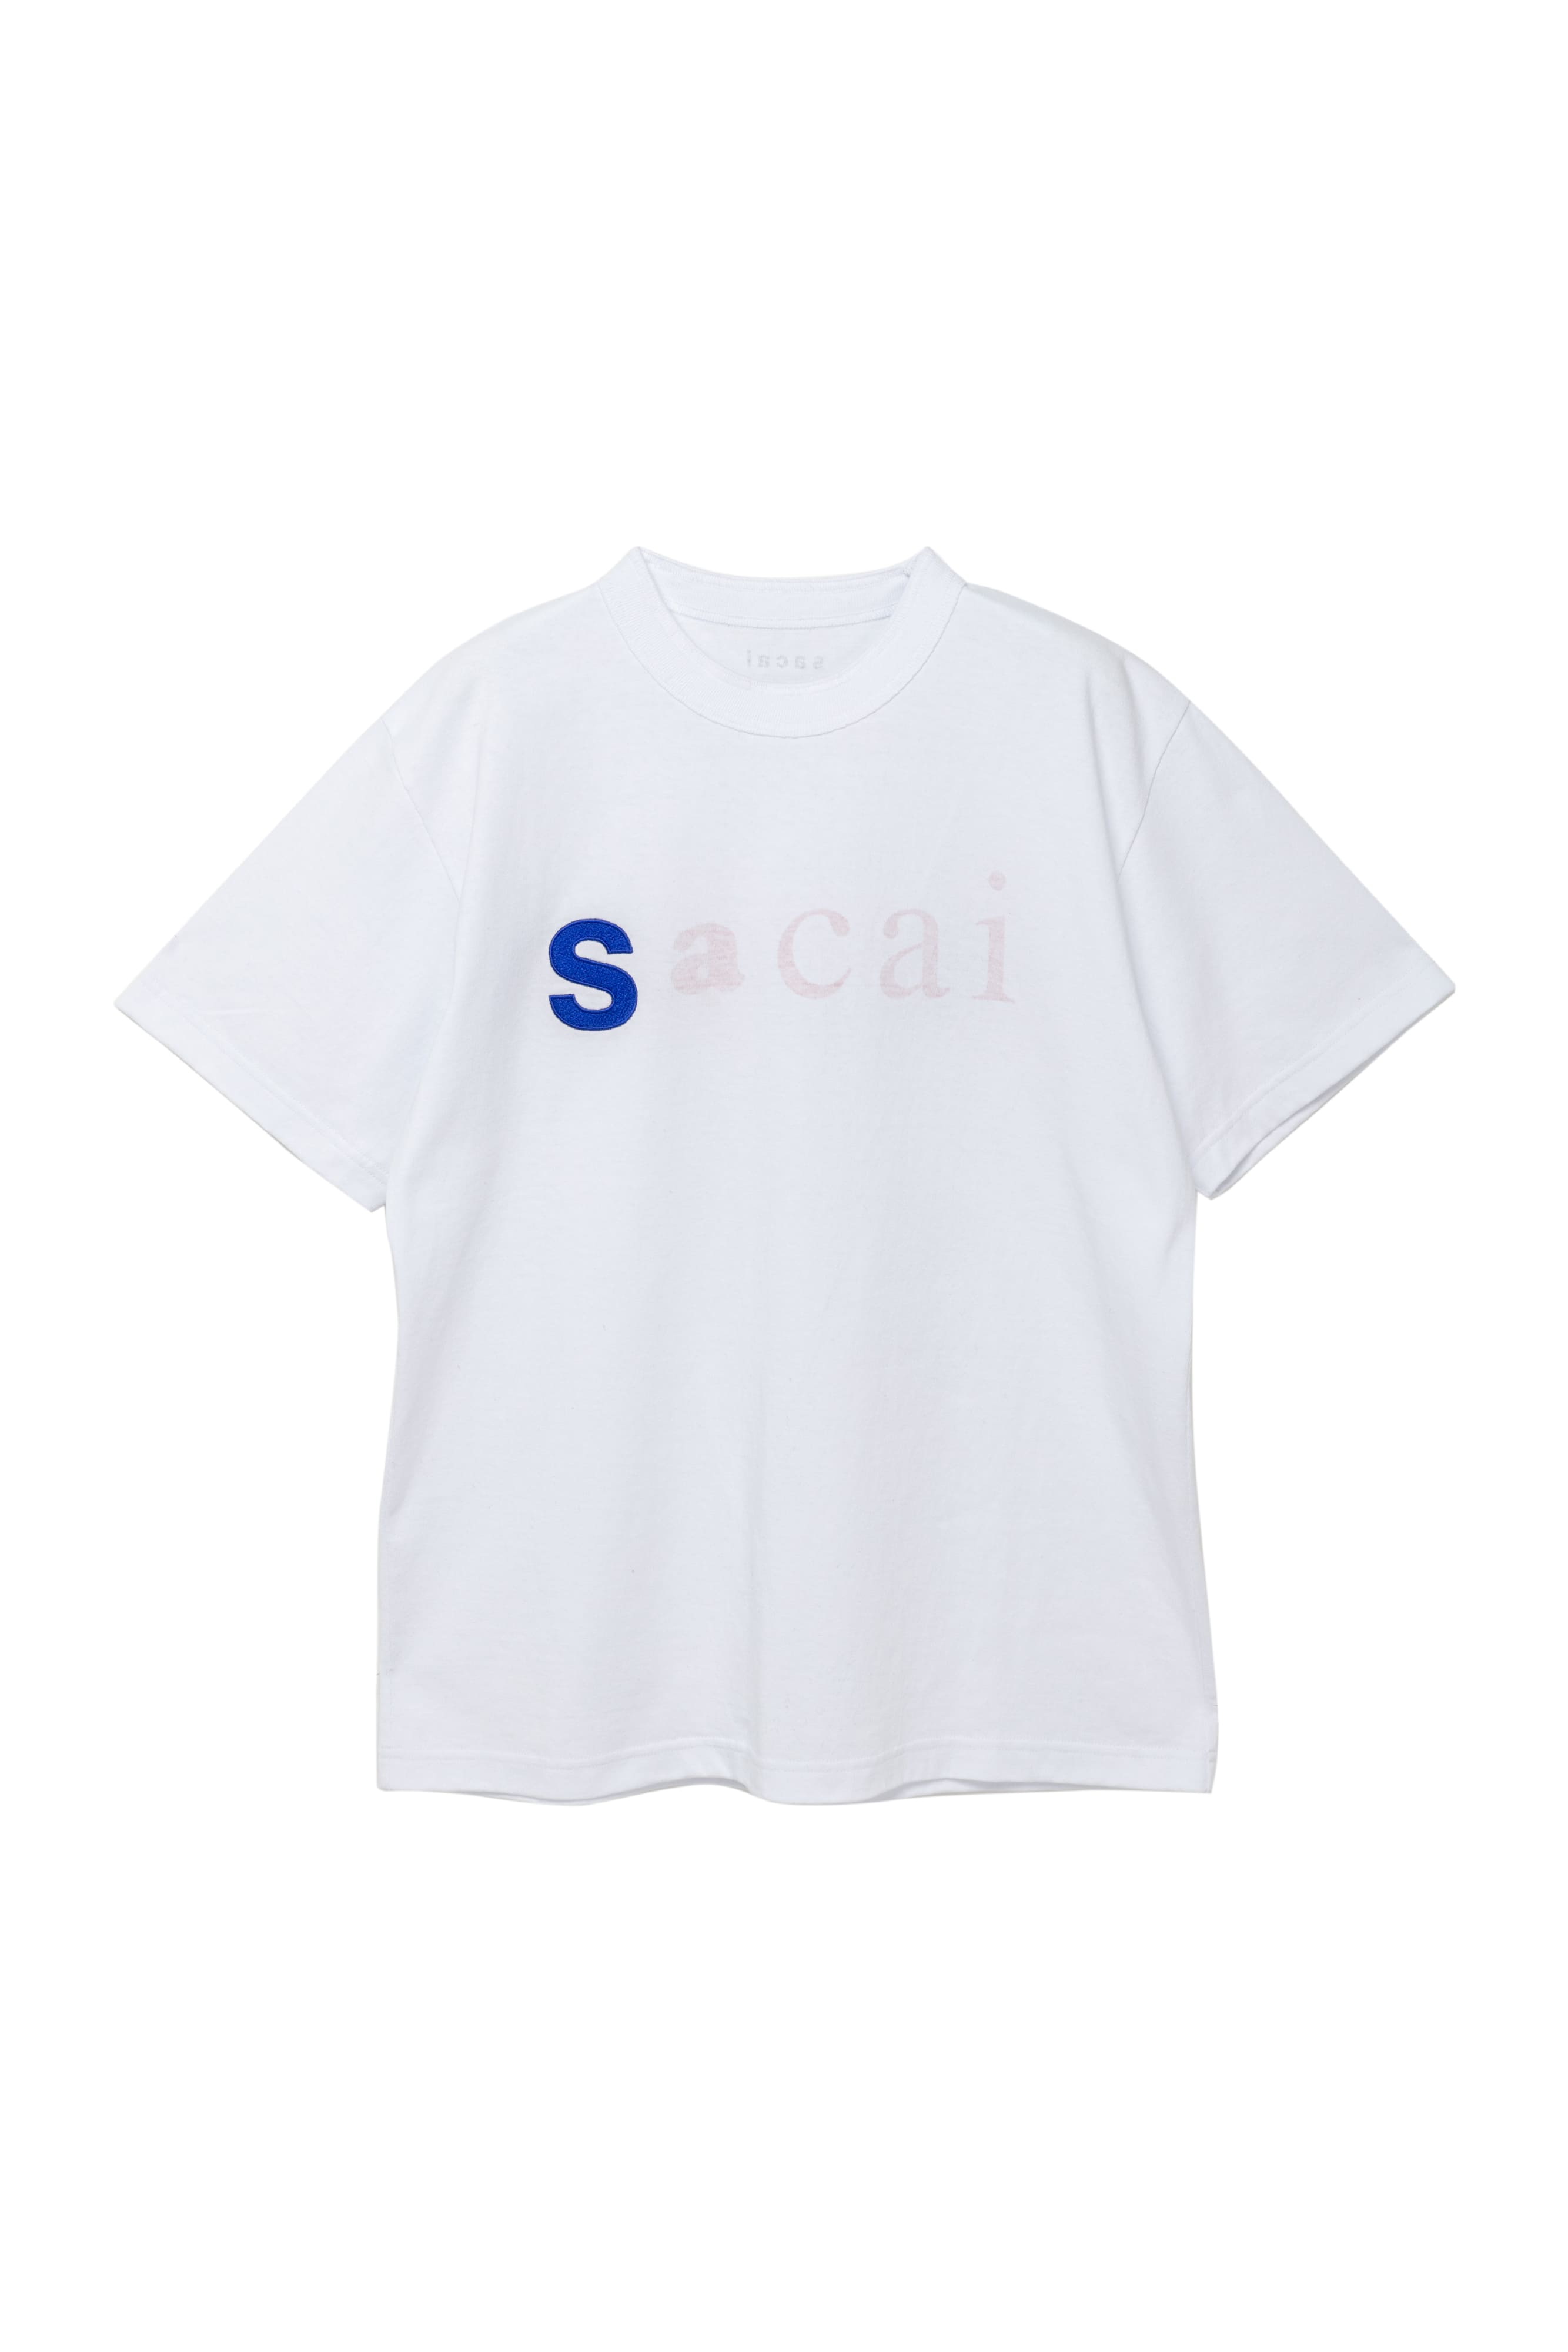 Sacai(サカイ) I Get LIFTED T-Shirt メンズ トップス - トップス